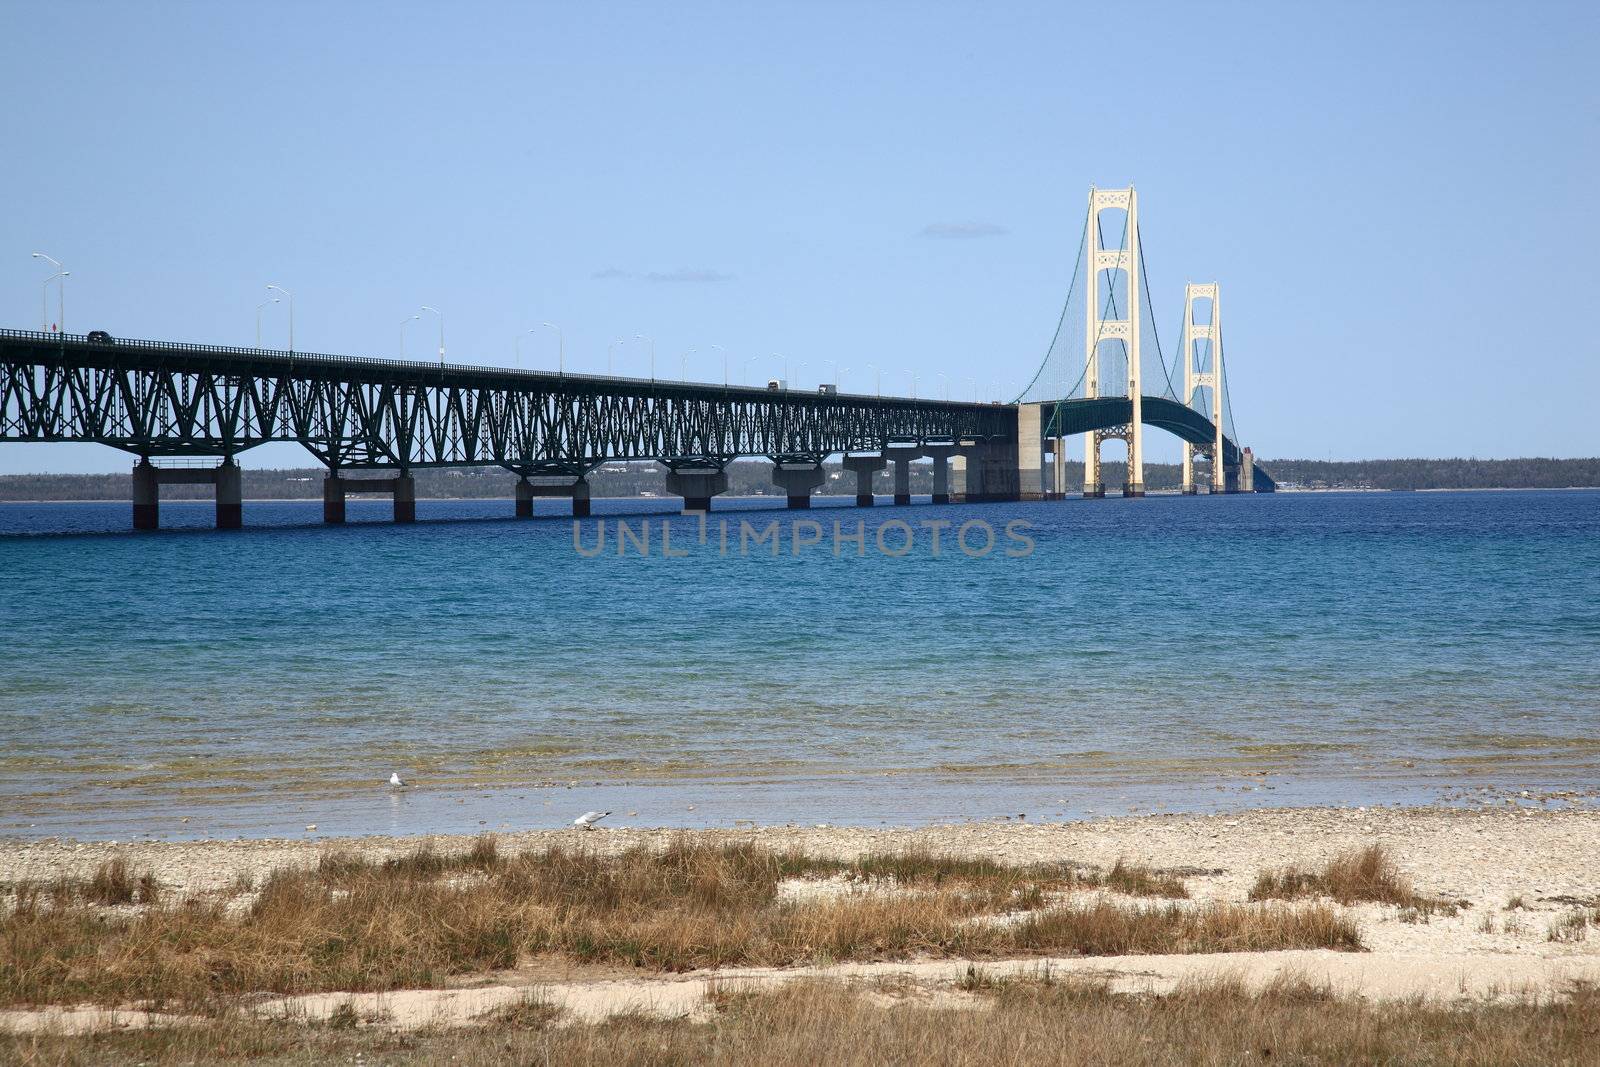 Suspension bridge connecting Upper and Lower peninsulas of Michigan